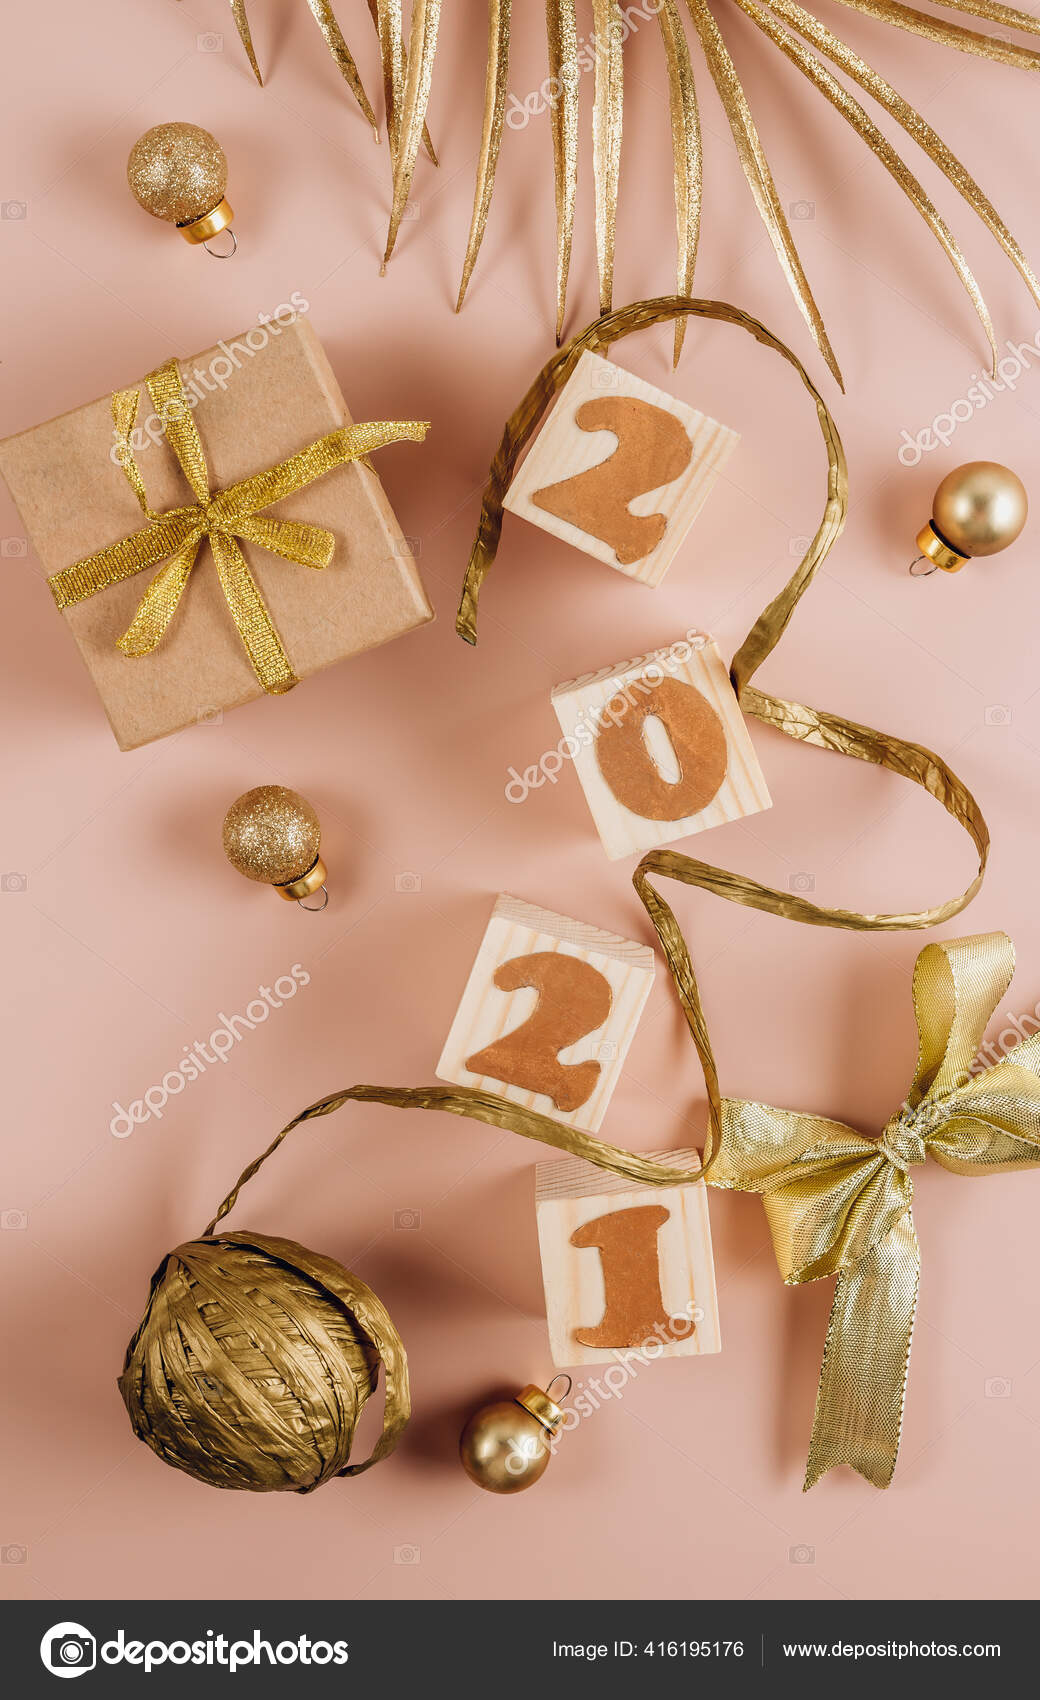 精美的圣诞背景带有金色圣诞装饰品礼品盒和木制方块并在粉末状粉底上刻上21年的字样平躺在床上顶部视图